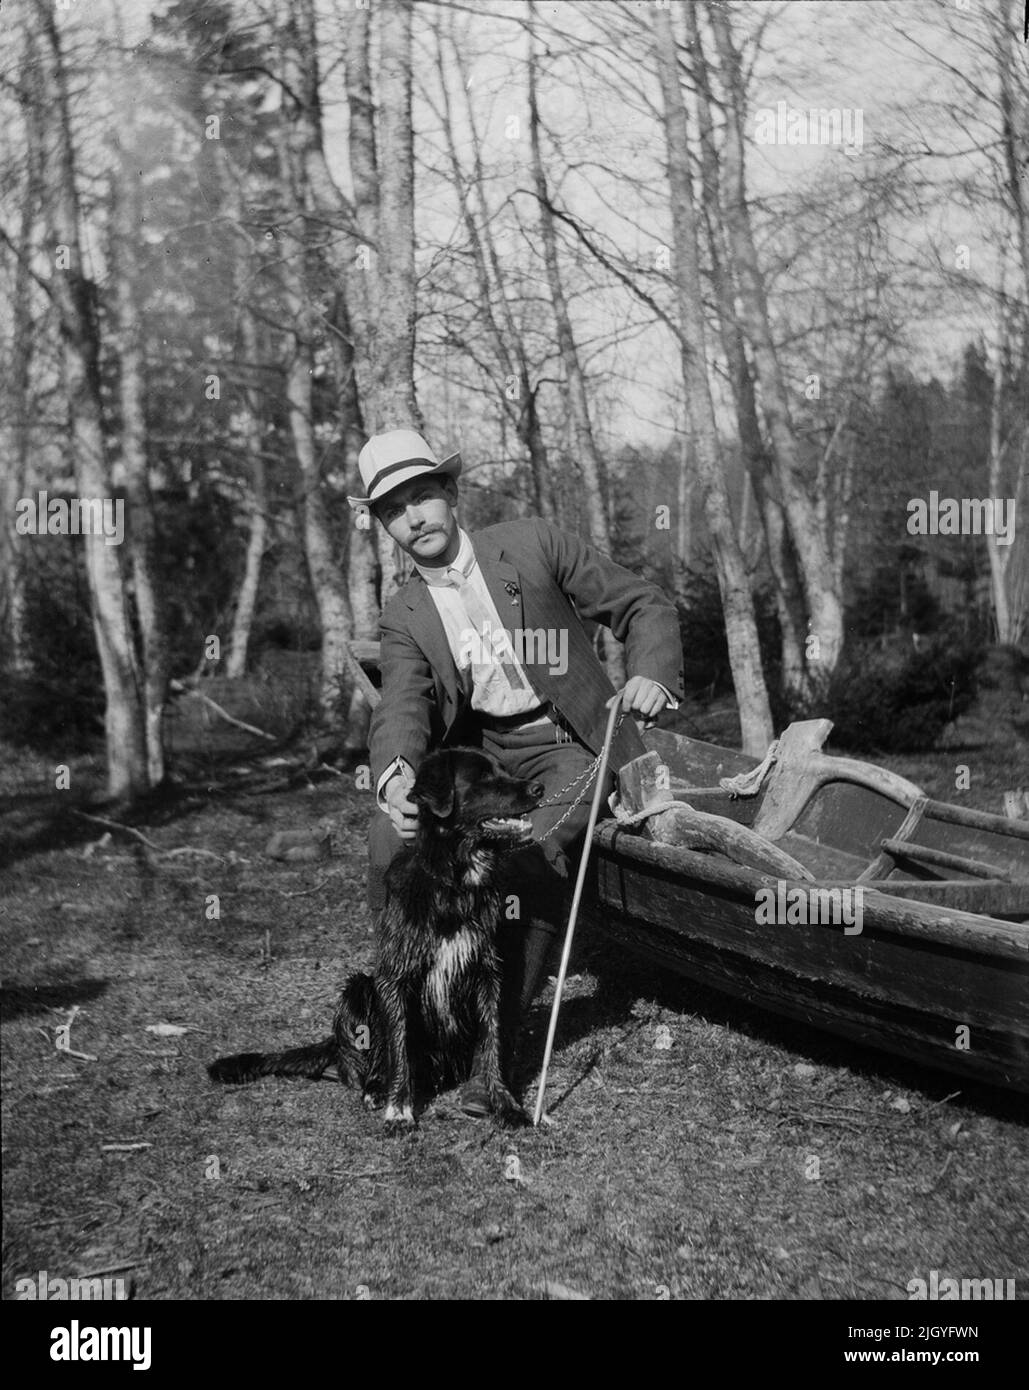 Josef Ärnström mit Hund auf dem Boot. Die Bildsammlung von Josef Ärnström wurde vom Upplands Museum 2011 erworben.Josef Ärnström wurde 1887 in Keps, Gemeinde Hållnäs, Uppland, geboren. Er war mit Nora Selldin, geboren in Timrå, Medelpad, verheiratet. Sowohl Josef als auch seine Frau Nora nahmen um 1910 am Lehrerseminar in Uppsalla ihren Abschluss. In Medelpad erhielt das Paar als frisch verheiratetes Paar zwischen 1910 und 12 ihre ersten Lehrerdienste an der Bergschule. Der Umzug ging dann nach Lappland, wo Josef zwischen 1913 und 18 in Toulleuvaara angestellt war. Joseph beendete seine Karriere als Übungslehrer ab etwa 19 Stockfoto